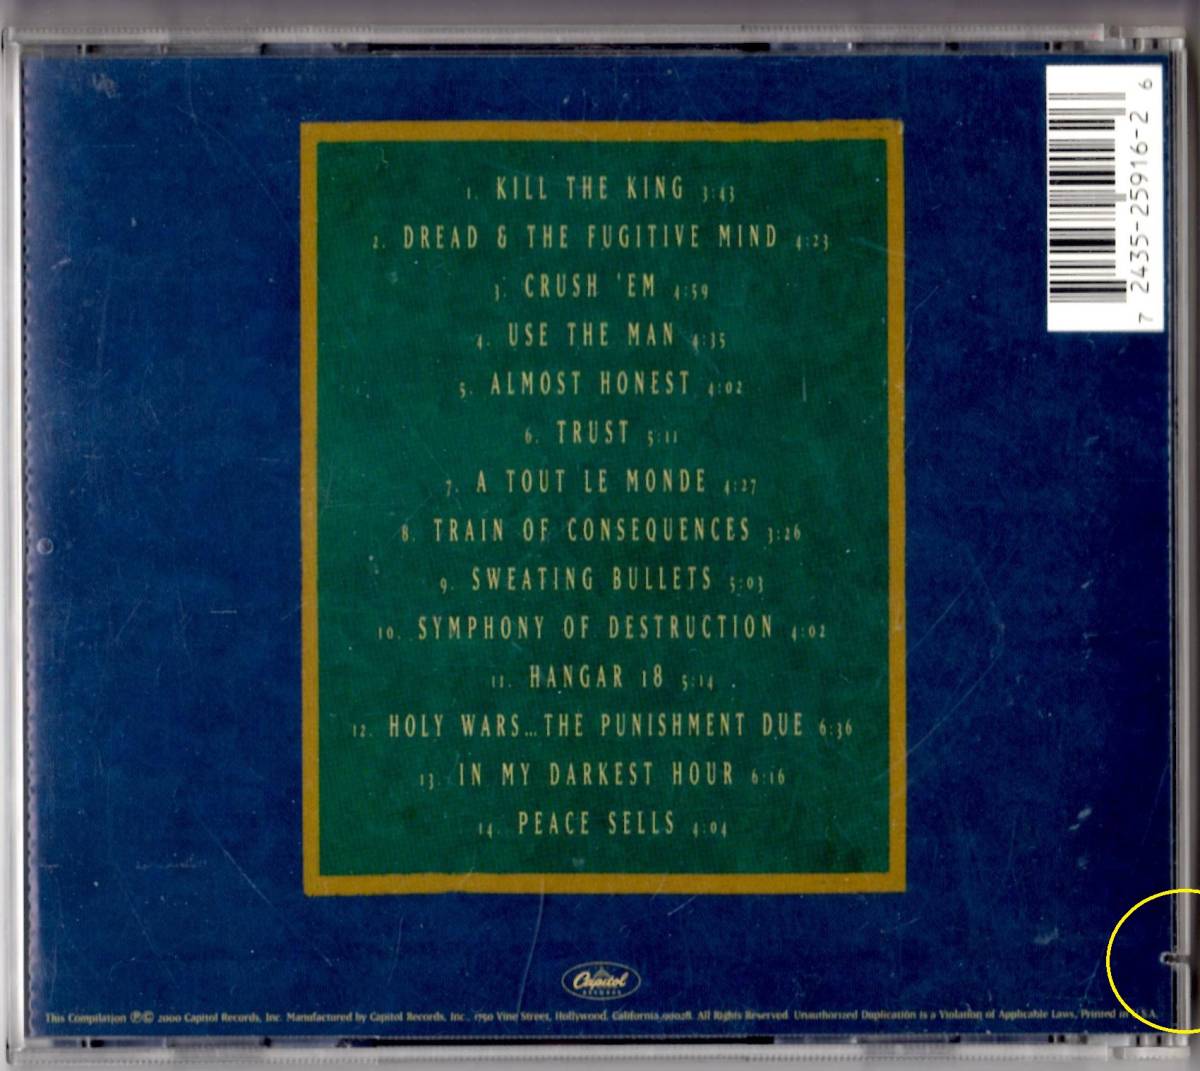 Used CD 輸入盤 メガデス Megadeth『キャピトル・パニッシュメント:ザ・メガデス・イヤーズ』傷有り- Capitol Punishment (2000年)全14曲_画像2